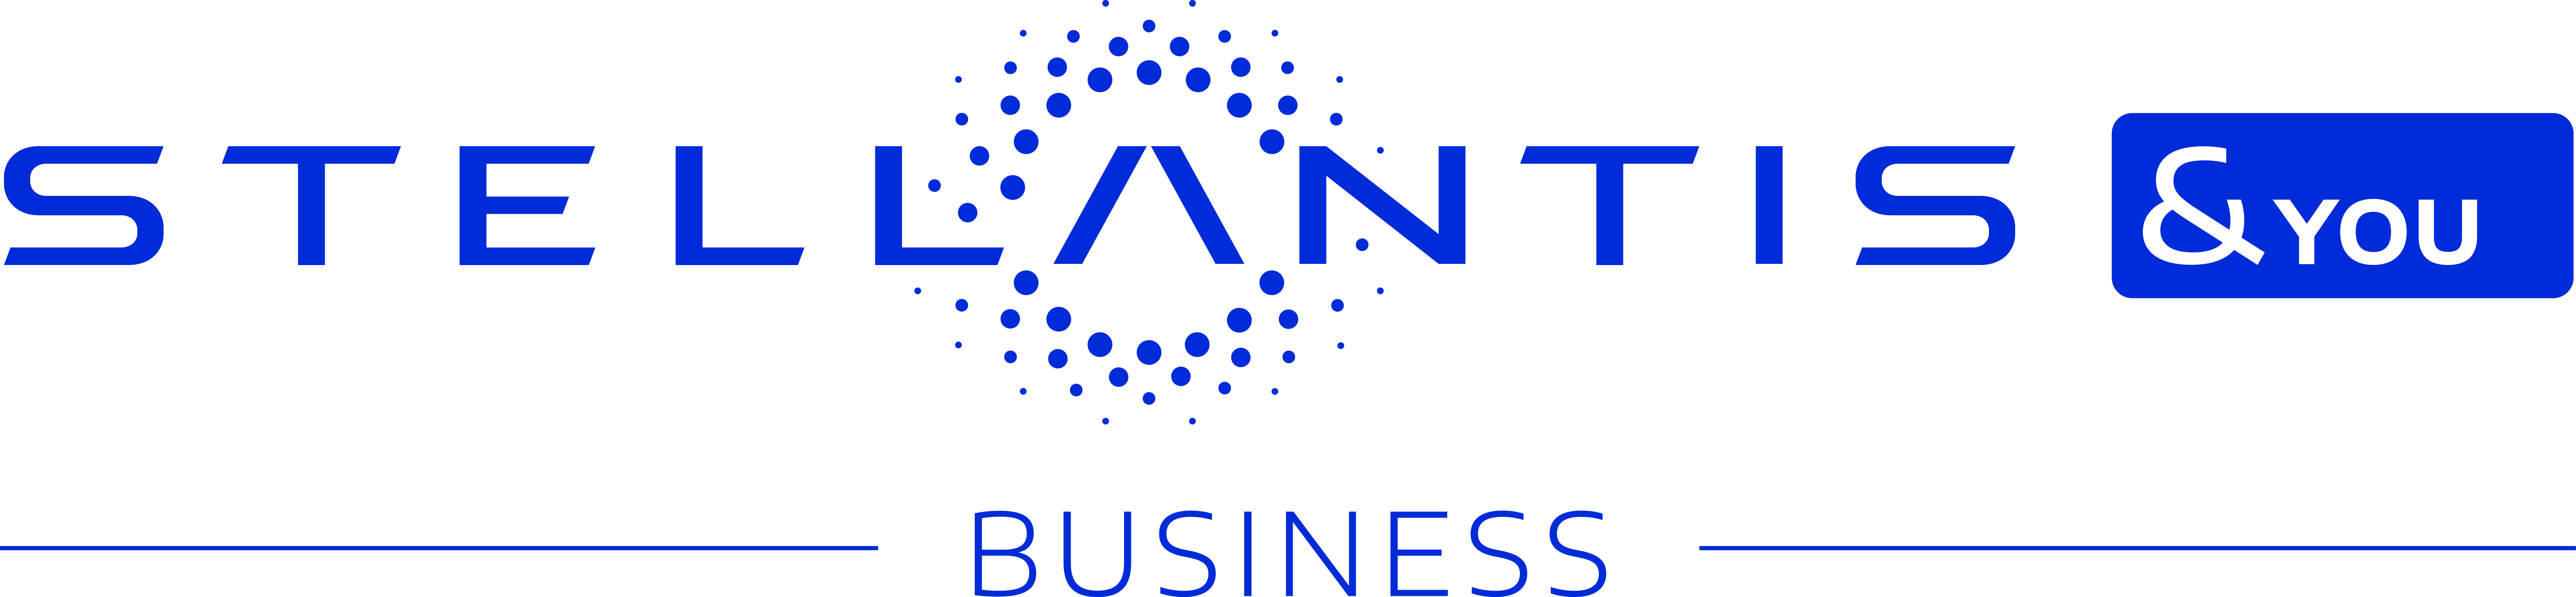 Stellantis & You Business Lyon